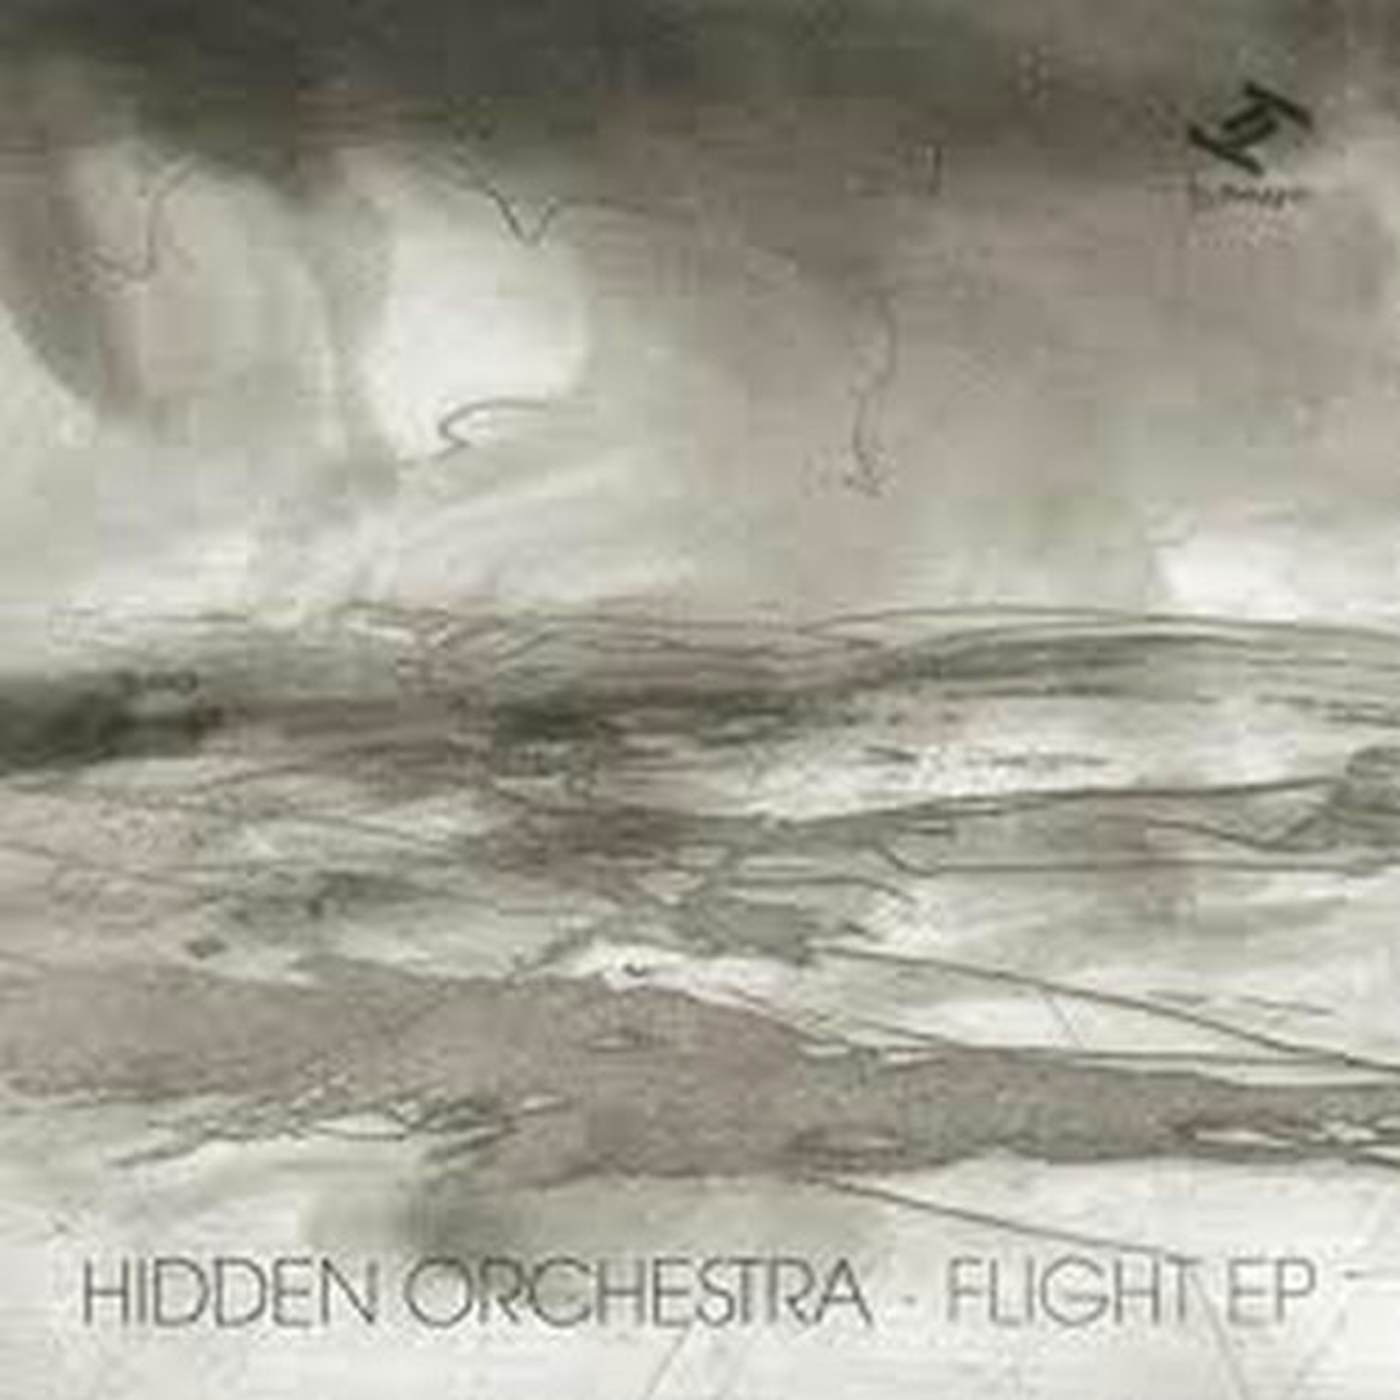 Hidden Orchestra Flight Vinyl Record